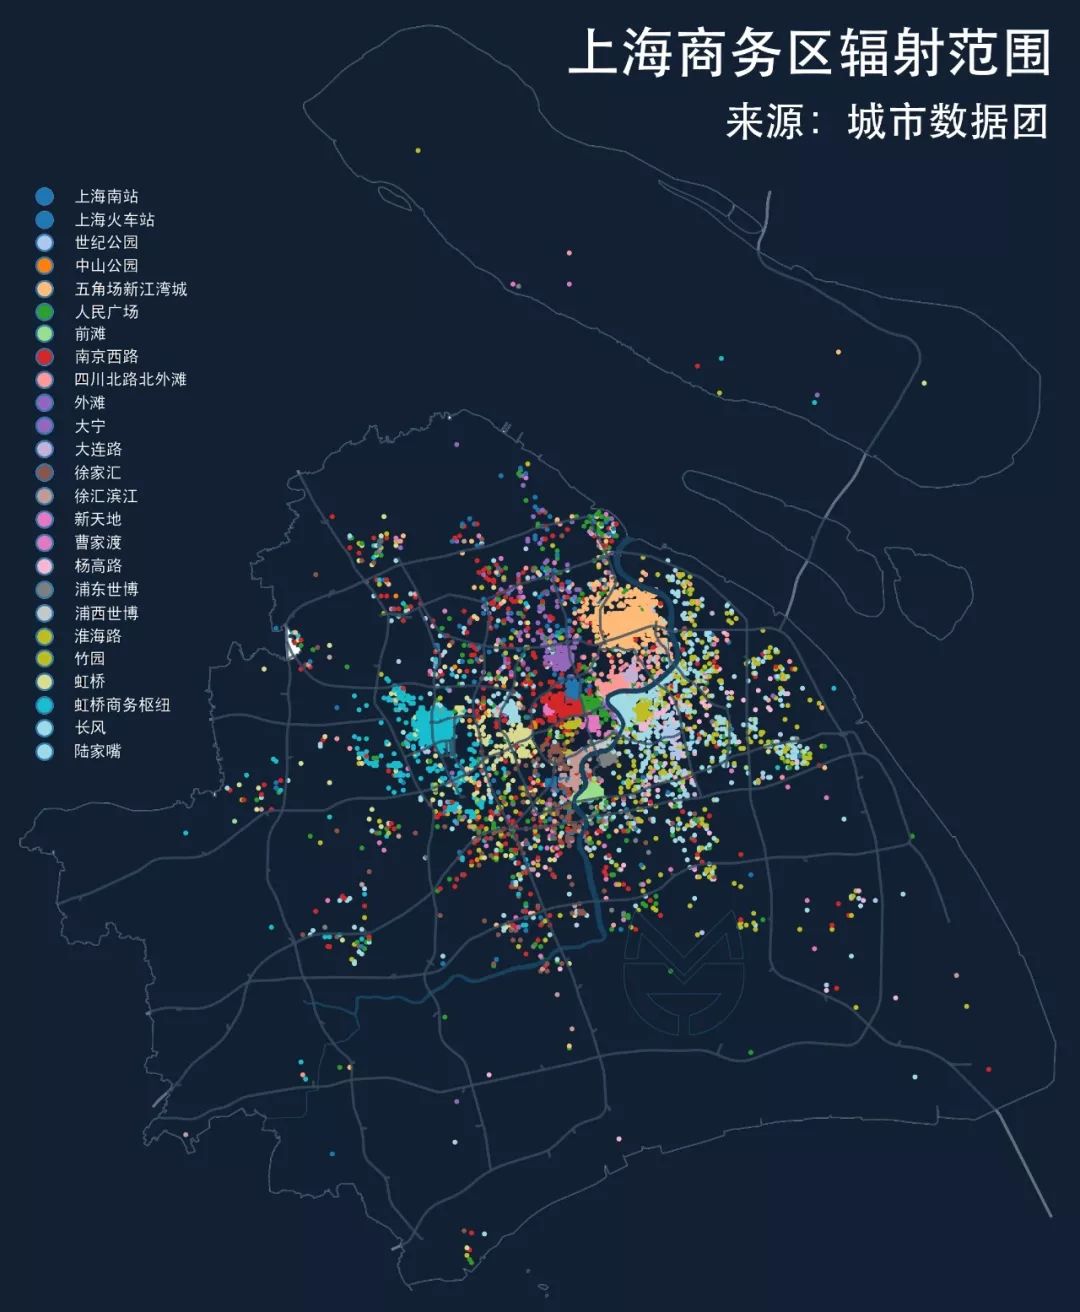 上海没有市中心